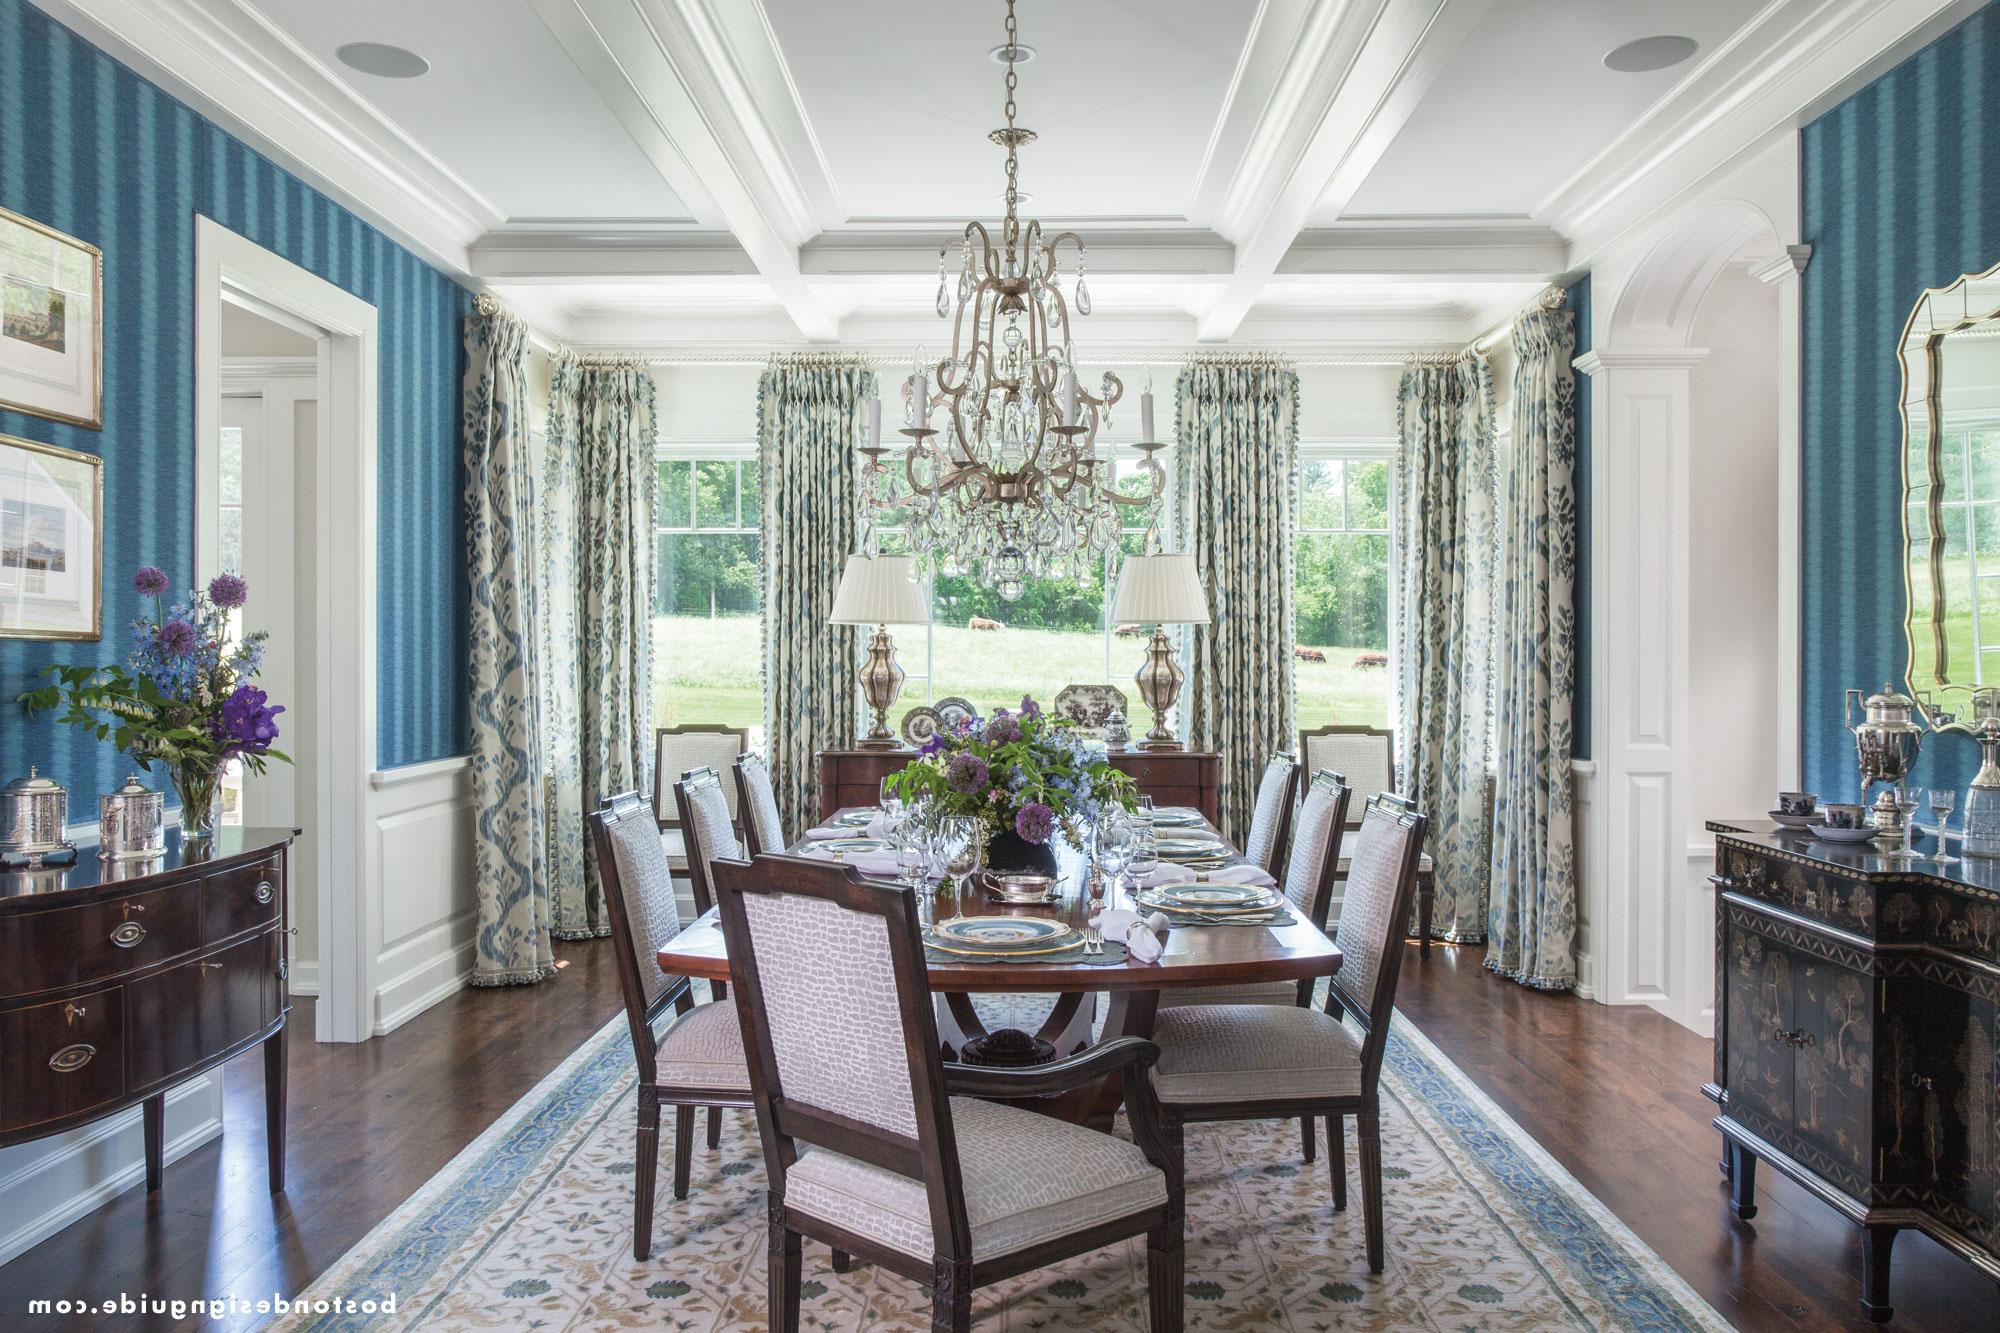 A lavish blue dining room design